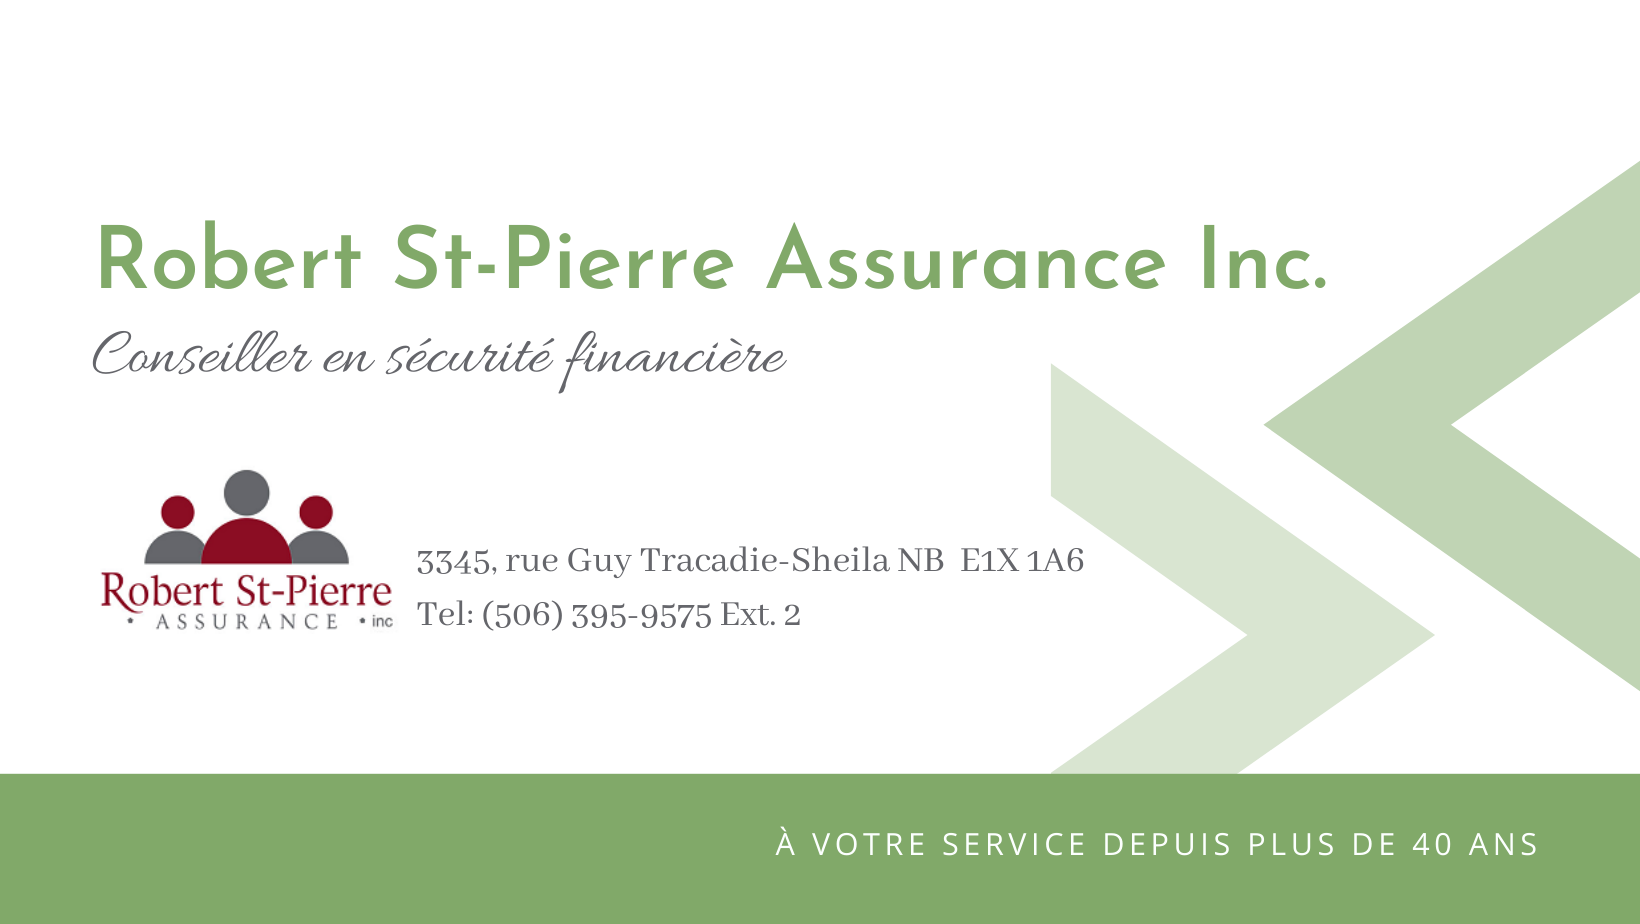 Robert St-Pierre Assurance Inc.